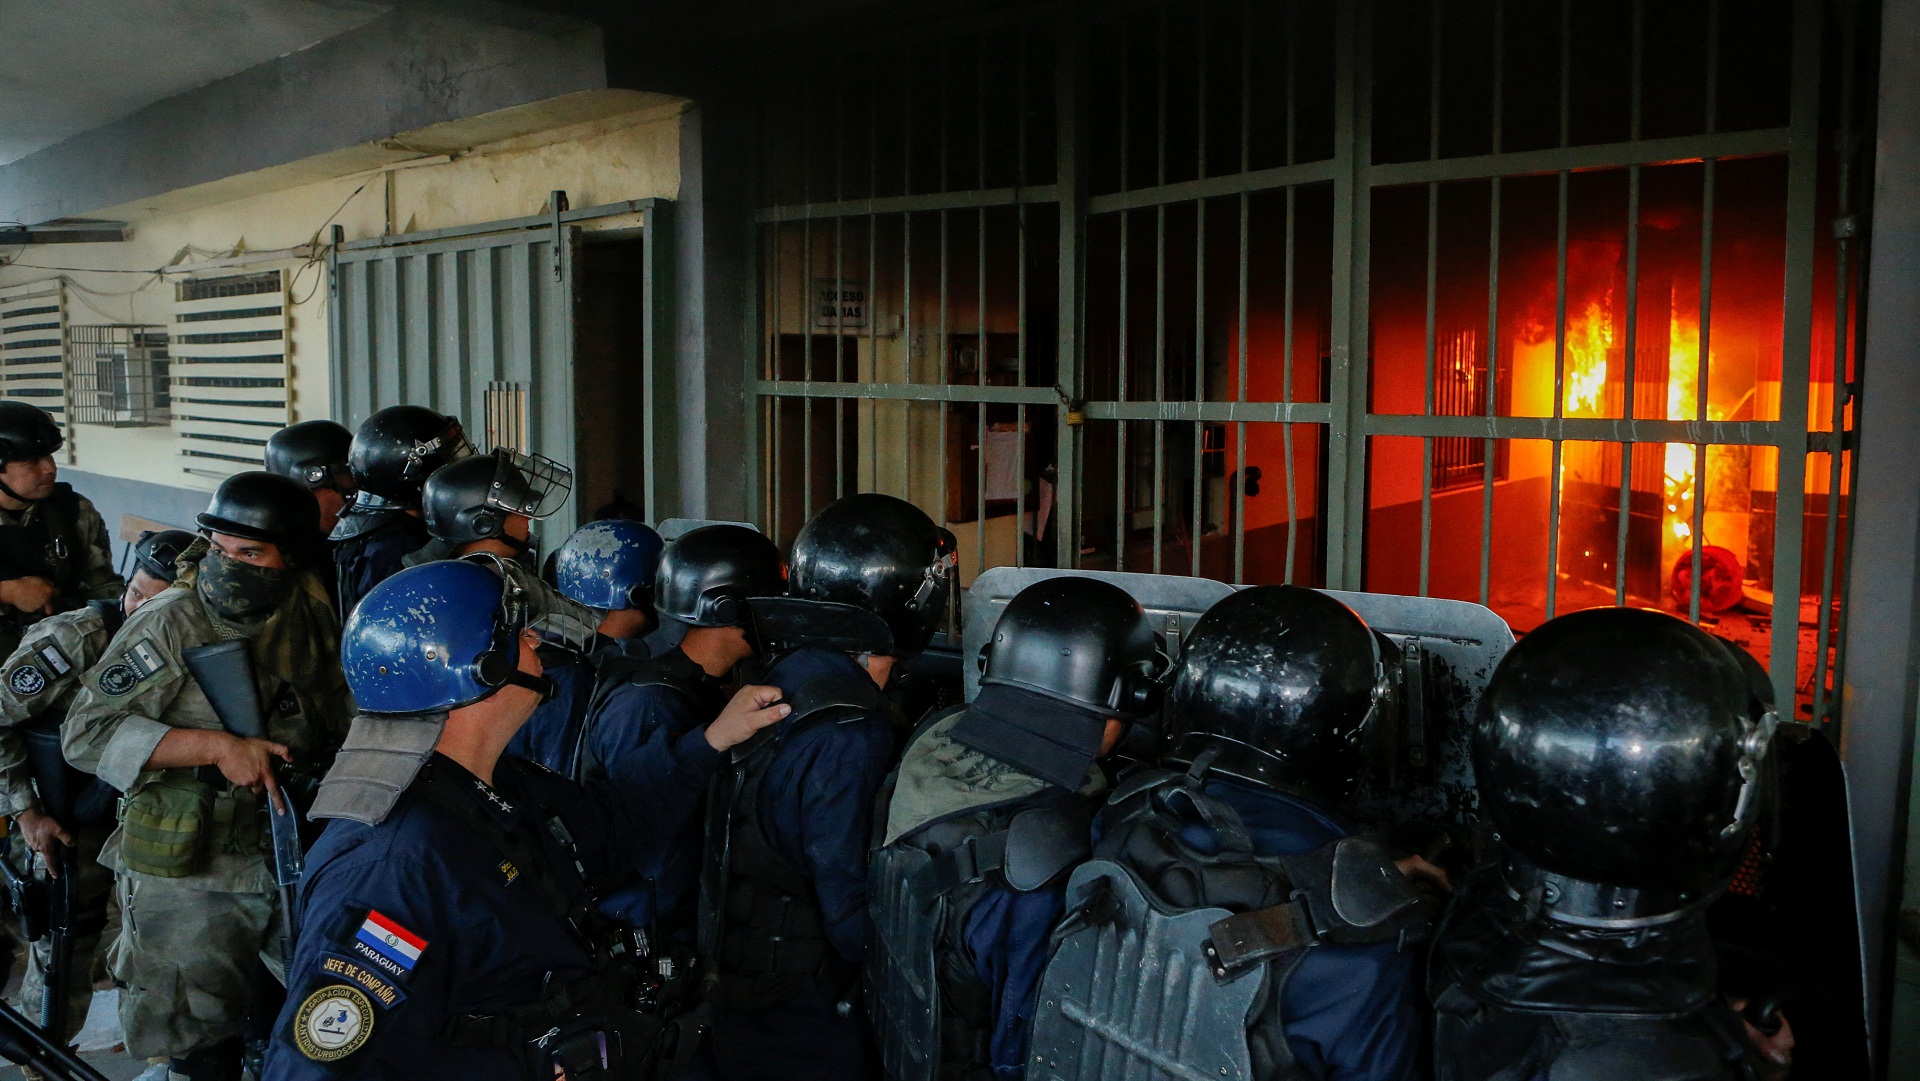 Εξέγερση των κρατουμένων στις φυλακές της Παραγουάης – Έθεσαν υπό ομηρία 11 μέλη του προσωπικού και έβαλαν φωτιά